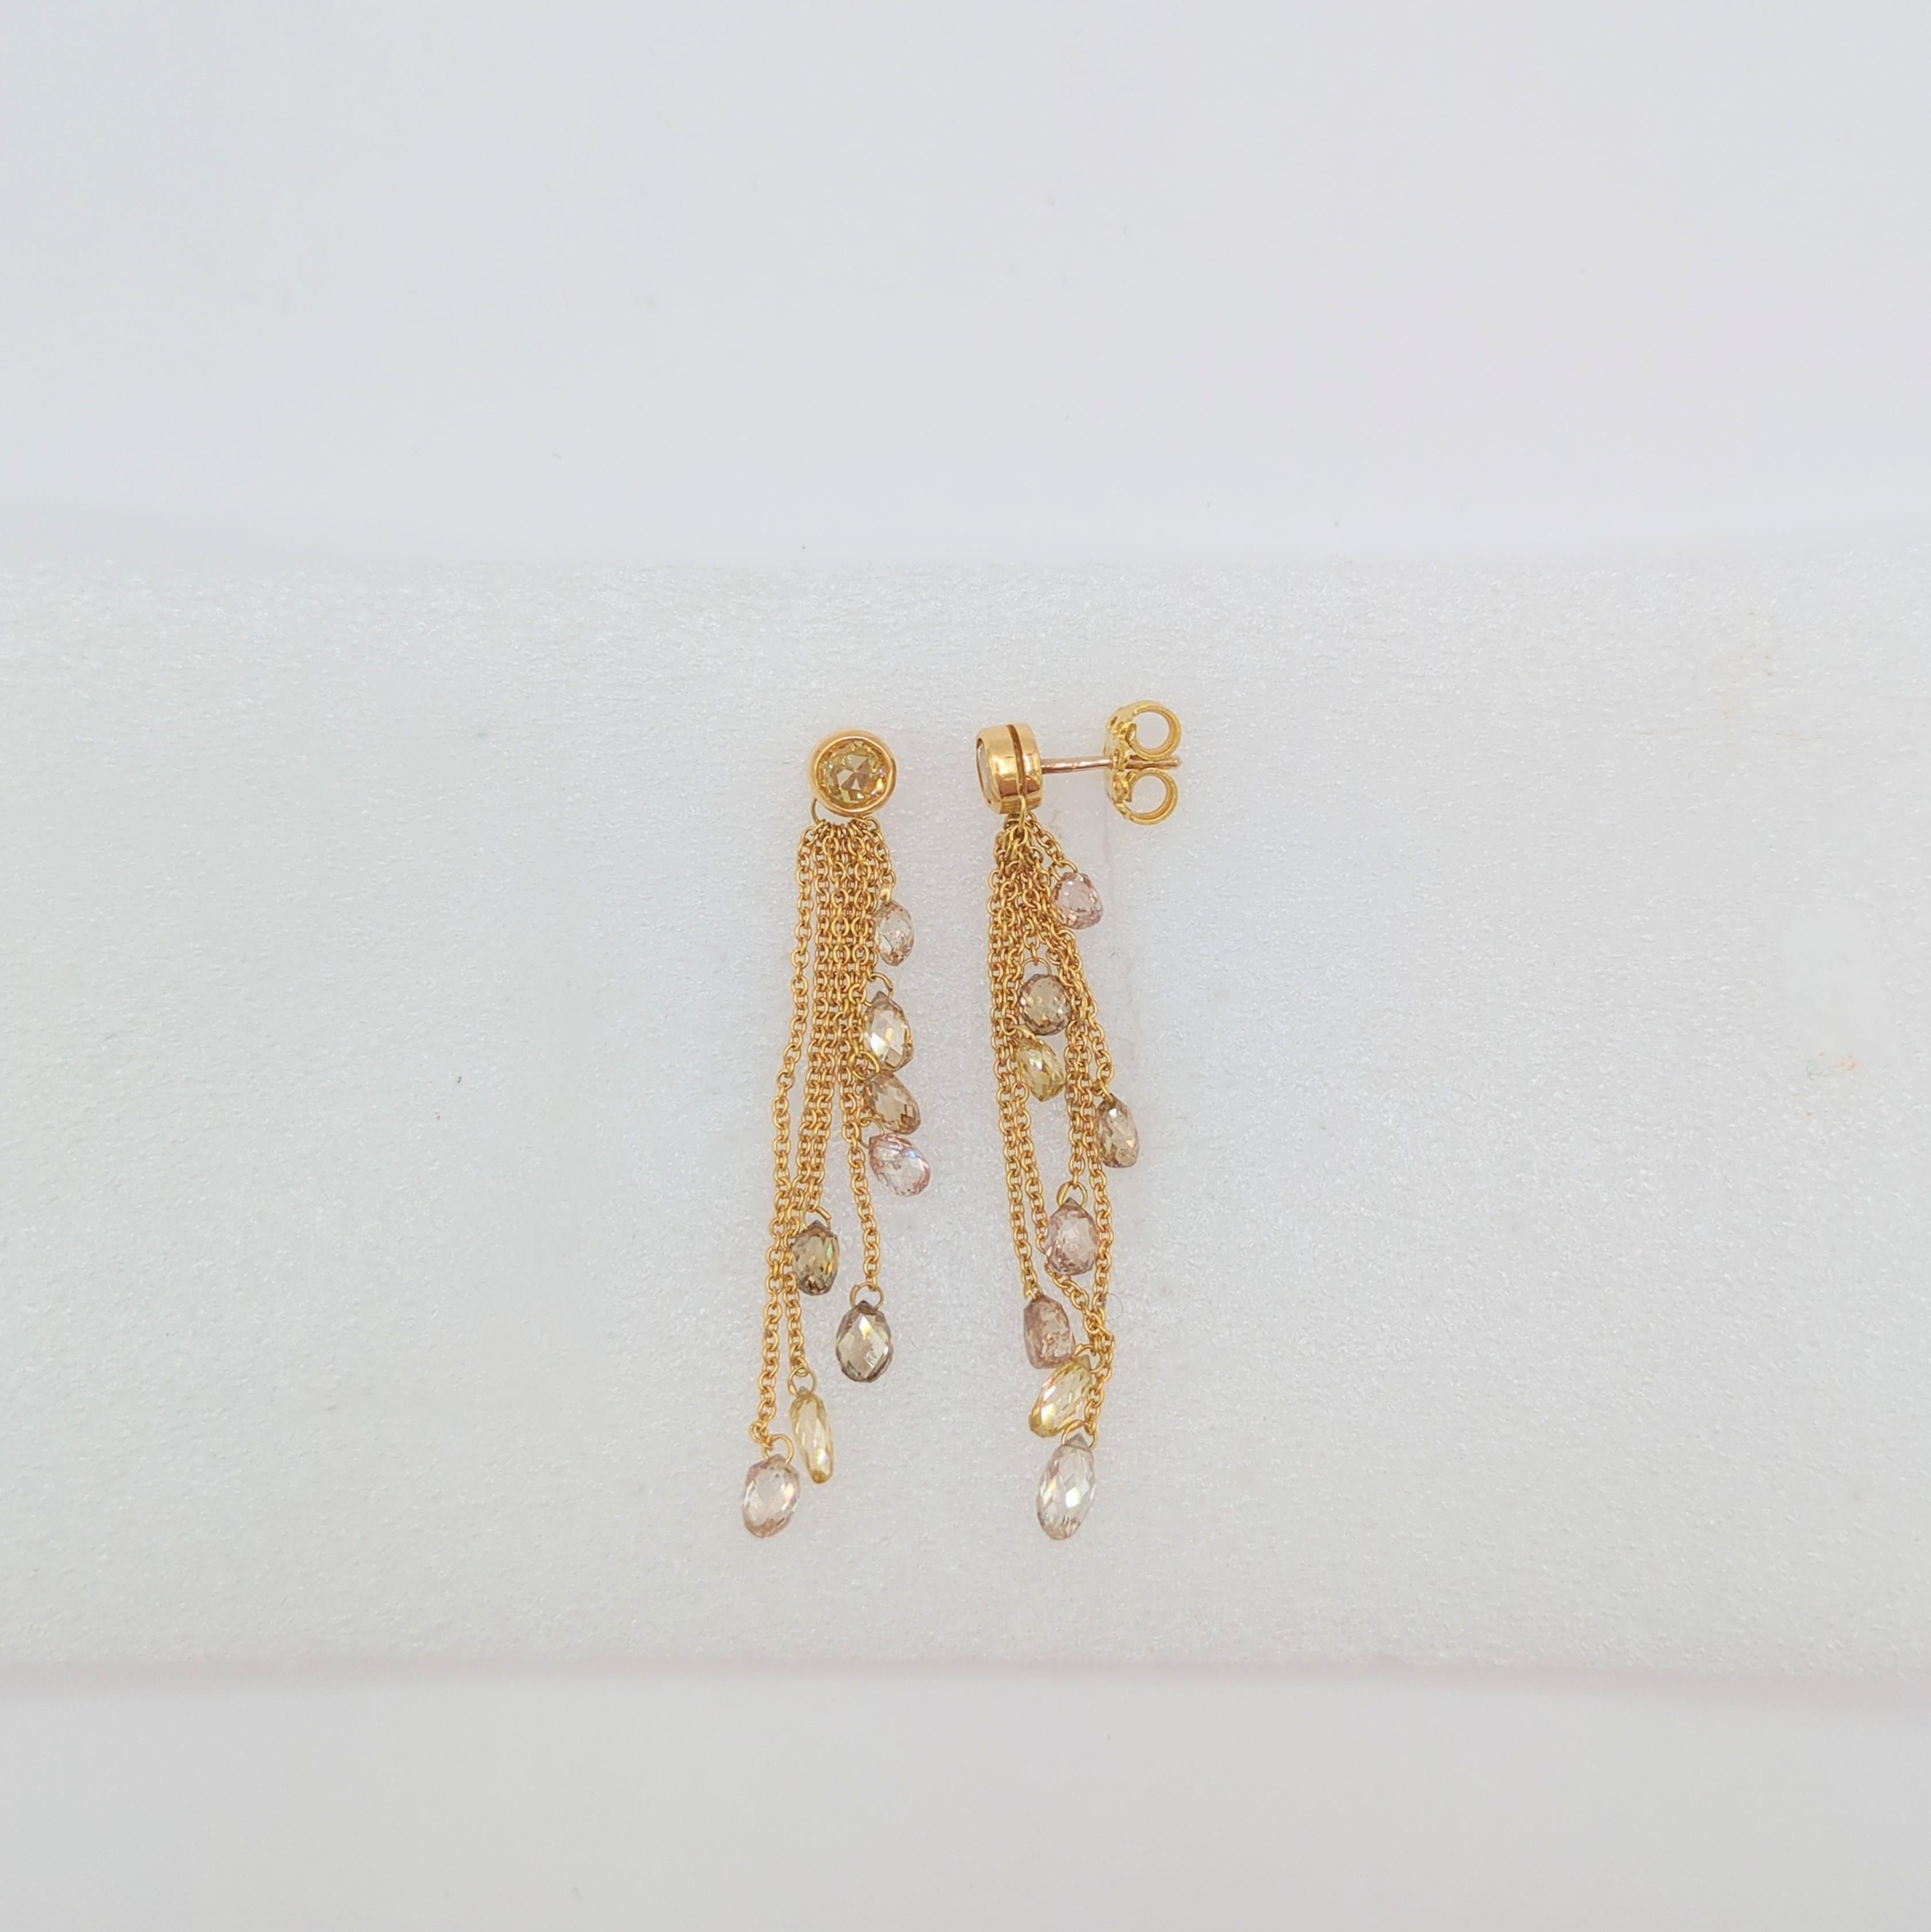 Briolette Champagne Diamond Dangle Earrings in 18K Yellow Gold 1